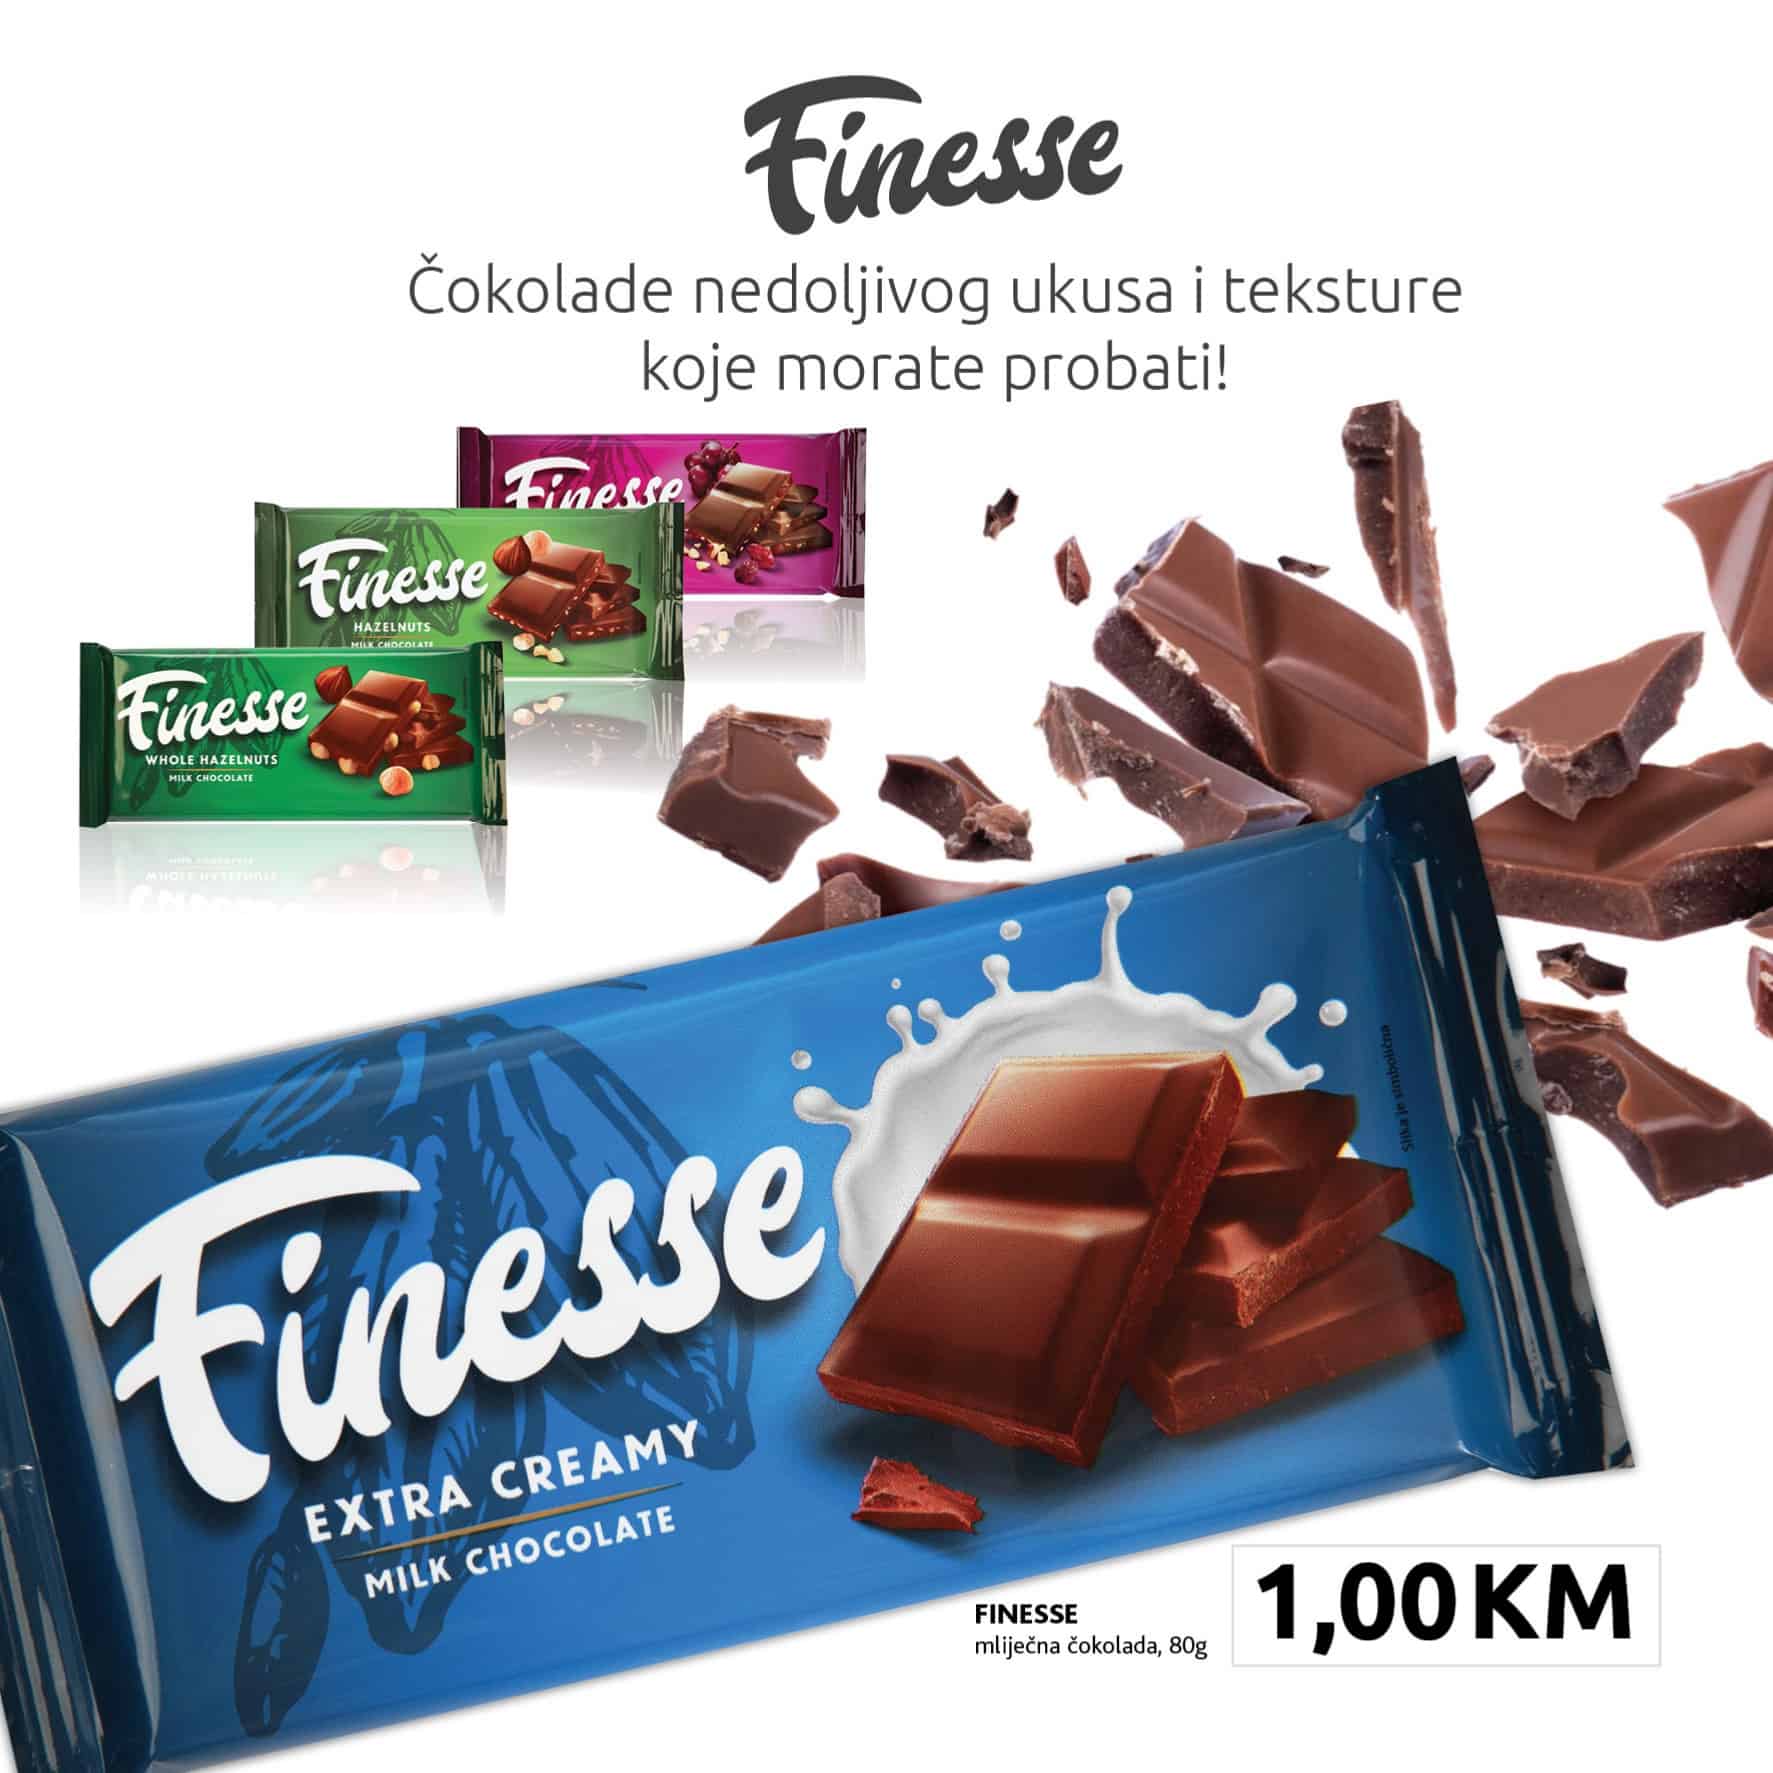 Konzum katalog donosi nam Finesse cokolade po cijeni od 1 KM!